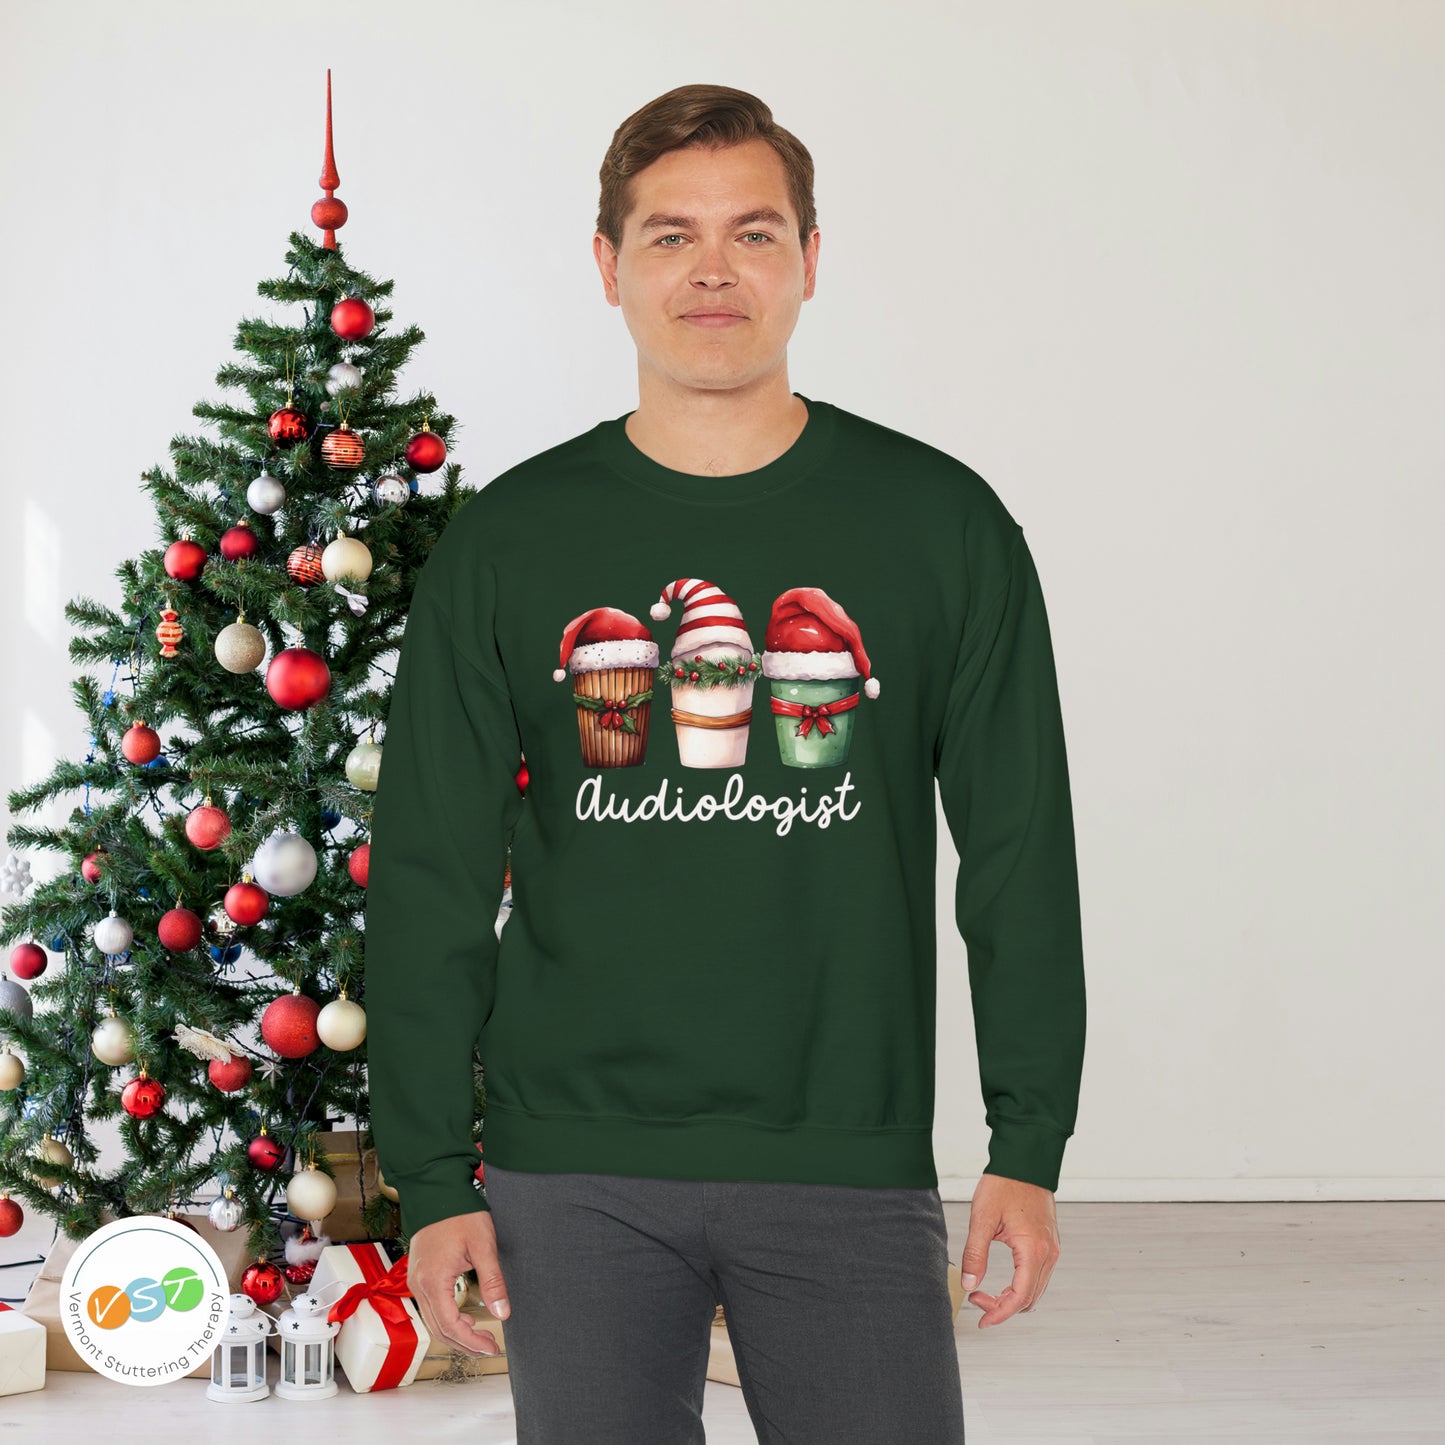 Audiologist Christmas Coffee Sweatshirt